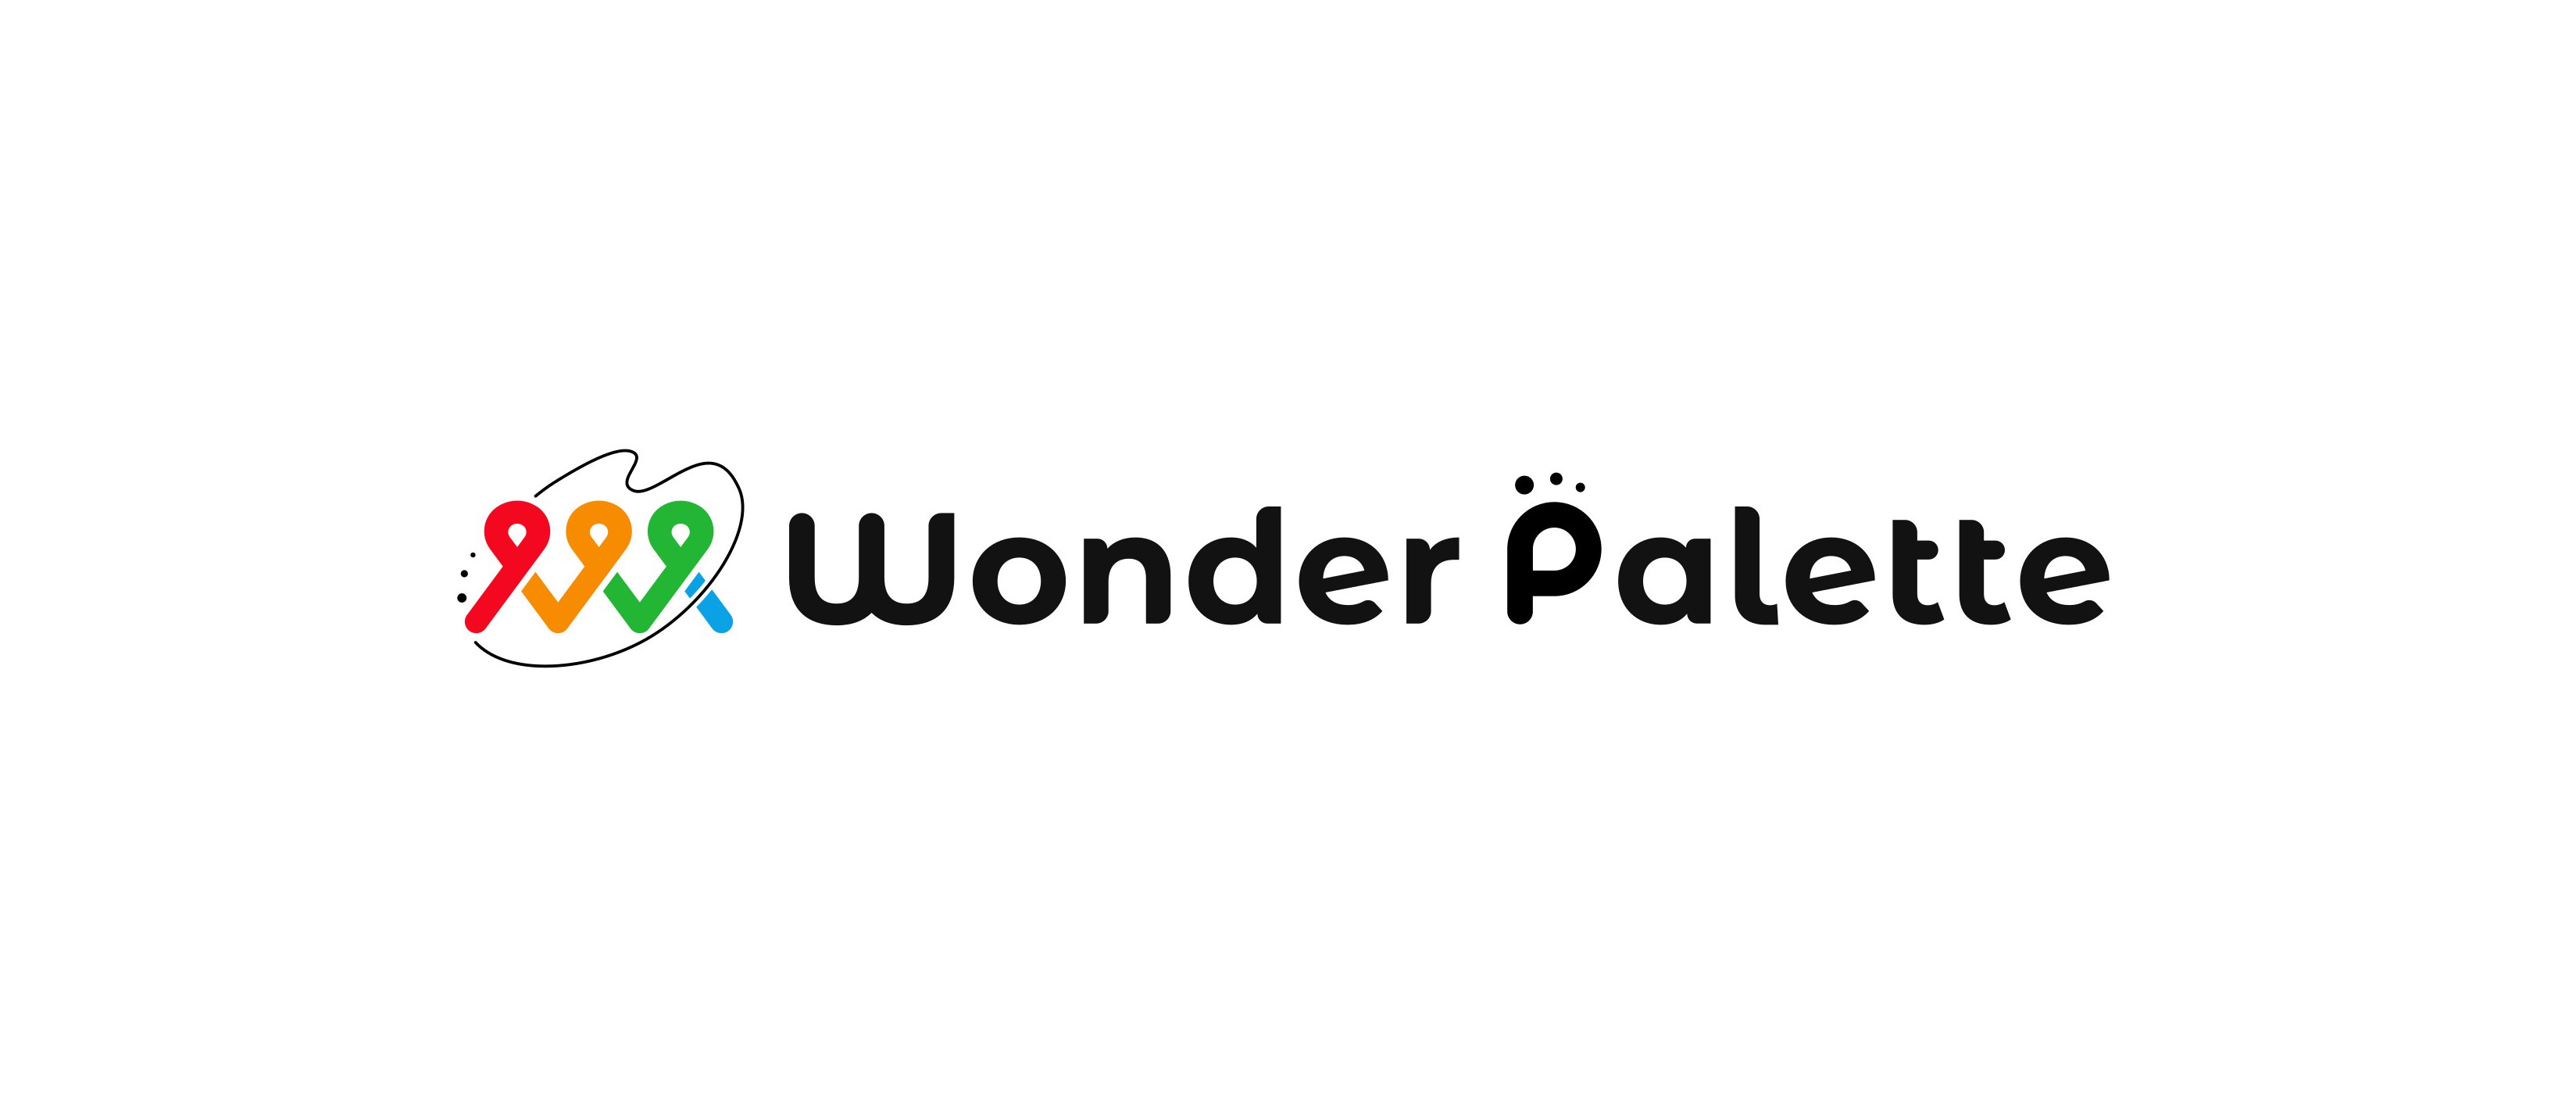 この企業と同じ業界の企業：株式会社 WonderPalette